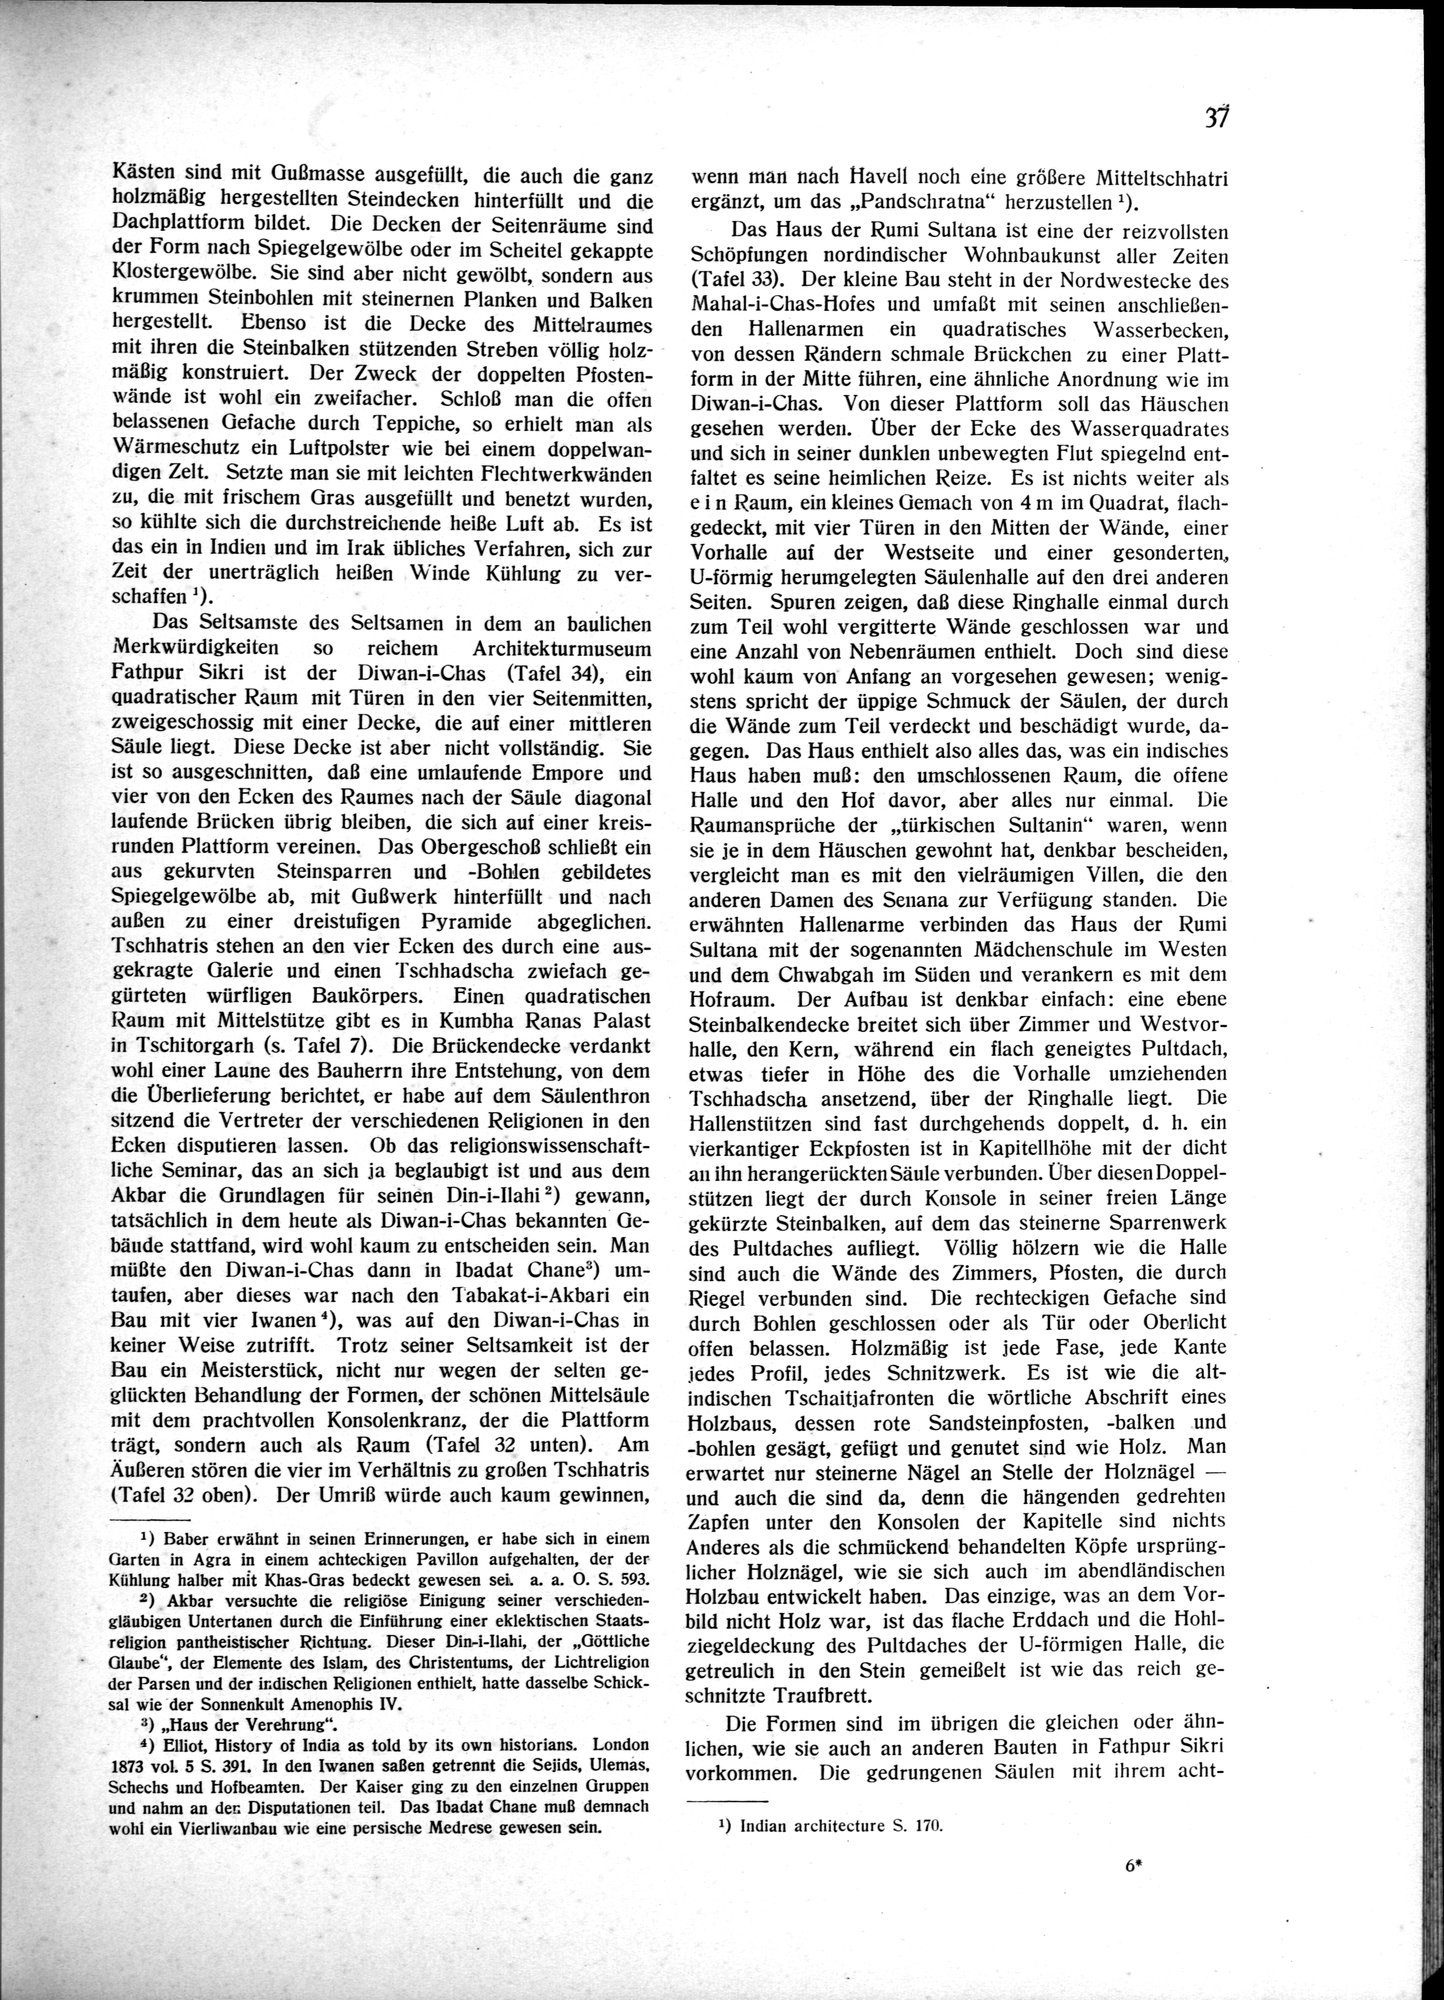 Indische Palaste und Wohnhauser : vol.1 / Page 47 (Grayscale High Resolution Image)